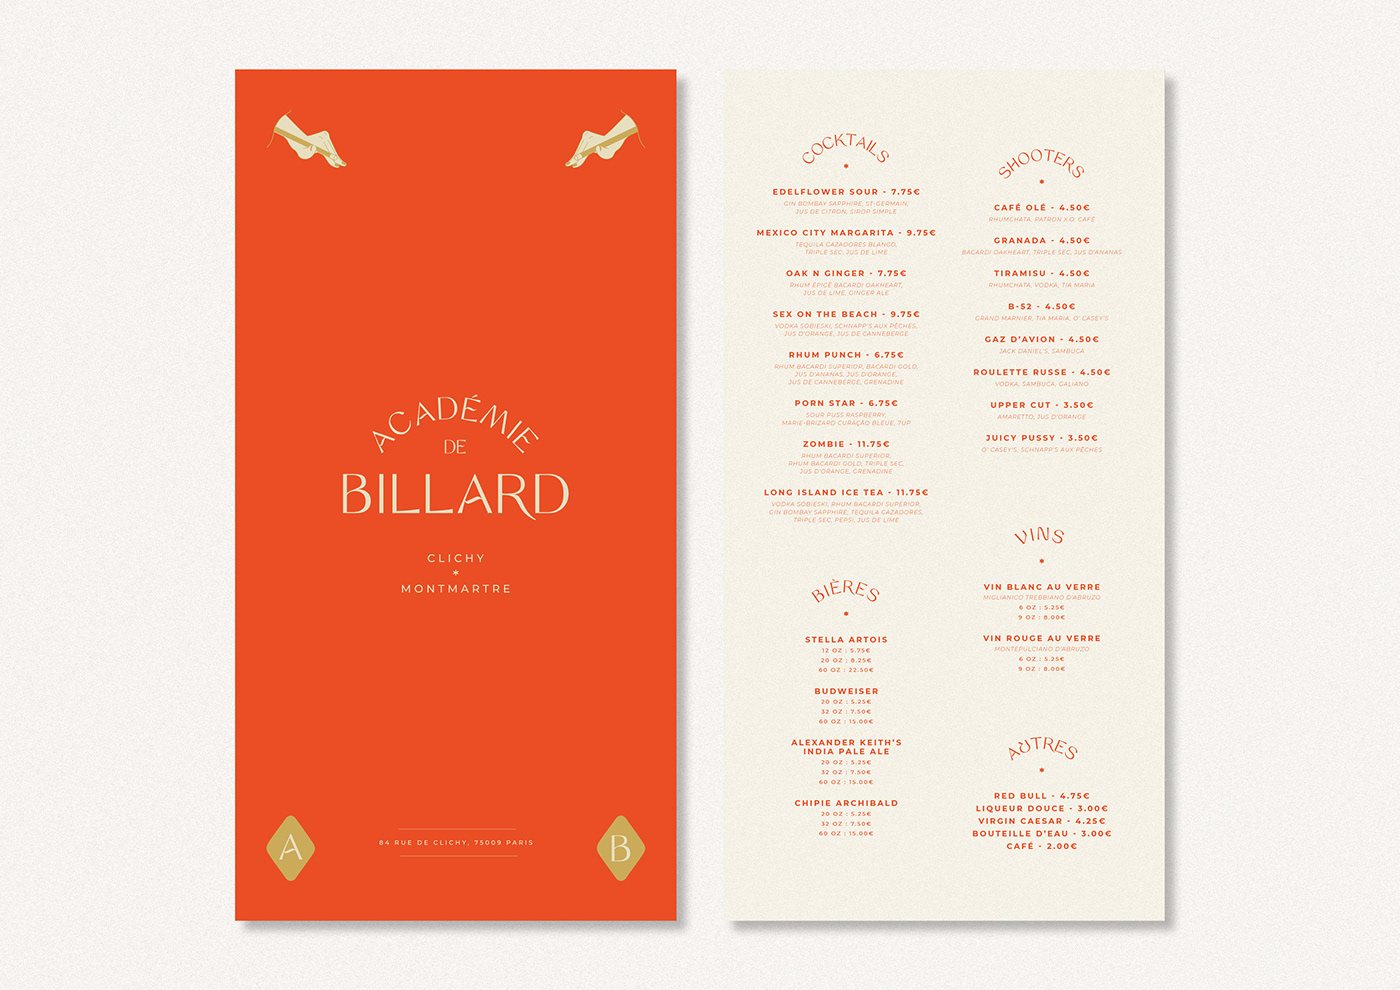 Billard identity Identity Design Branding design direction artistique design